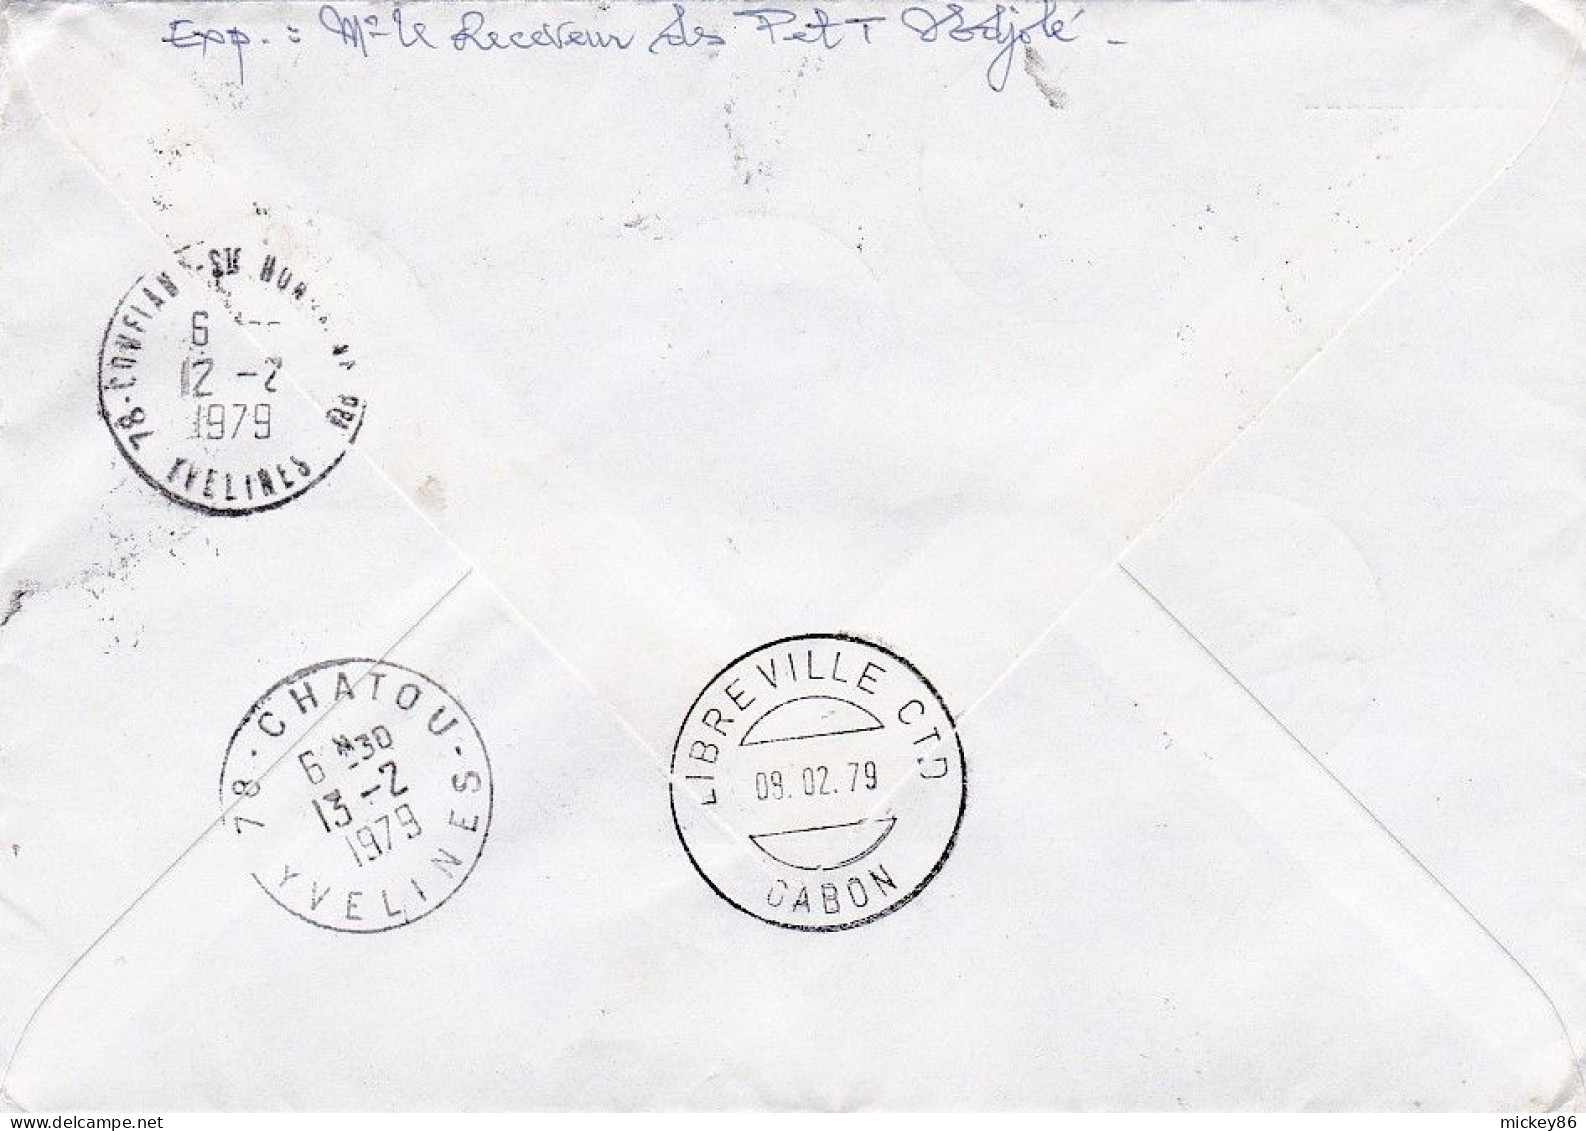 GABON---1979--Lettre Recommandée De NDJOLE  Pour CHATOU -78 (France)--timbres ( Lutte Apartheid, A.Durer,blason  ) - Gabun (1960-...)